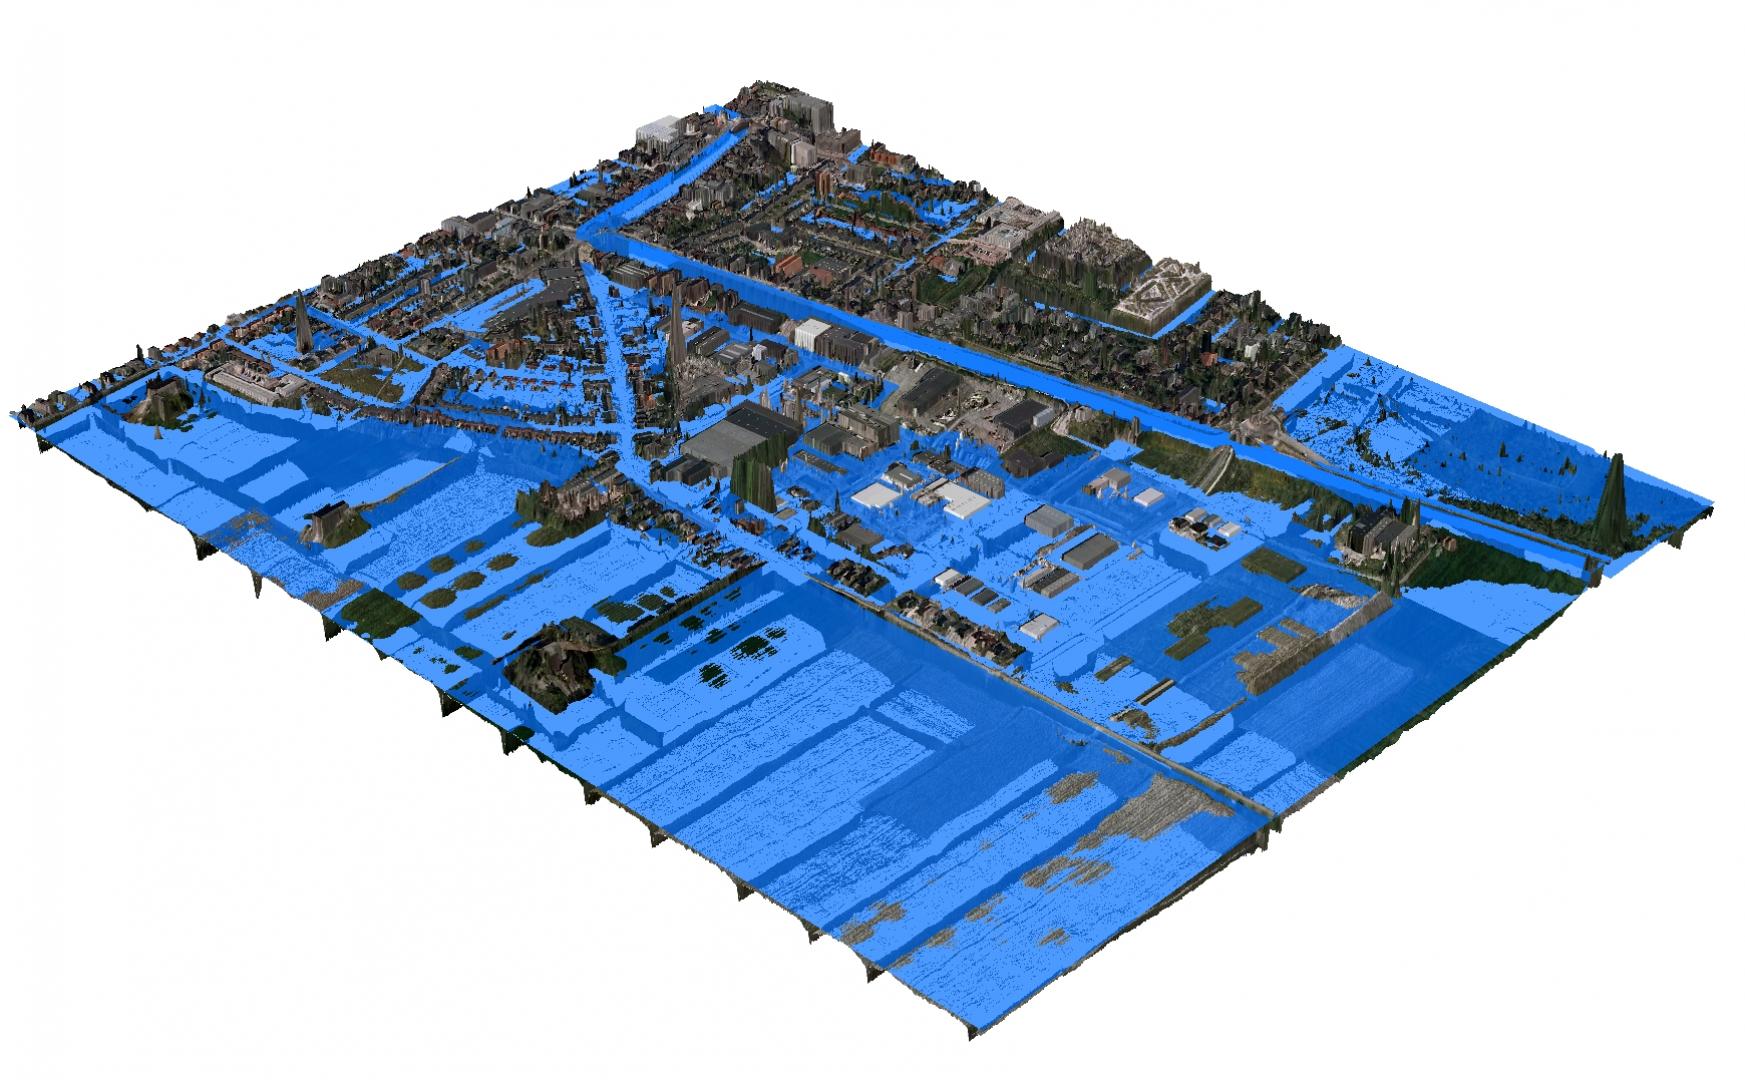 3Di võimaldab täpset üleujutuse modelleerimist